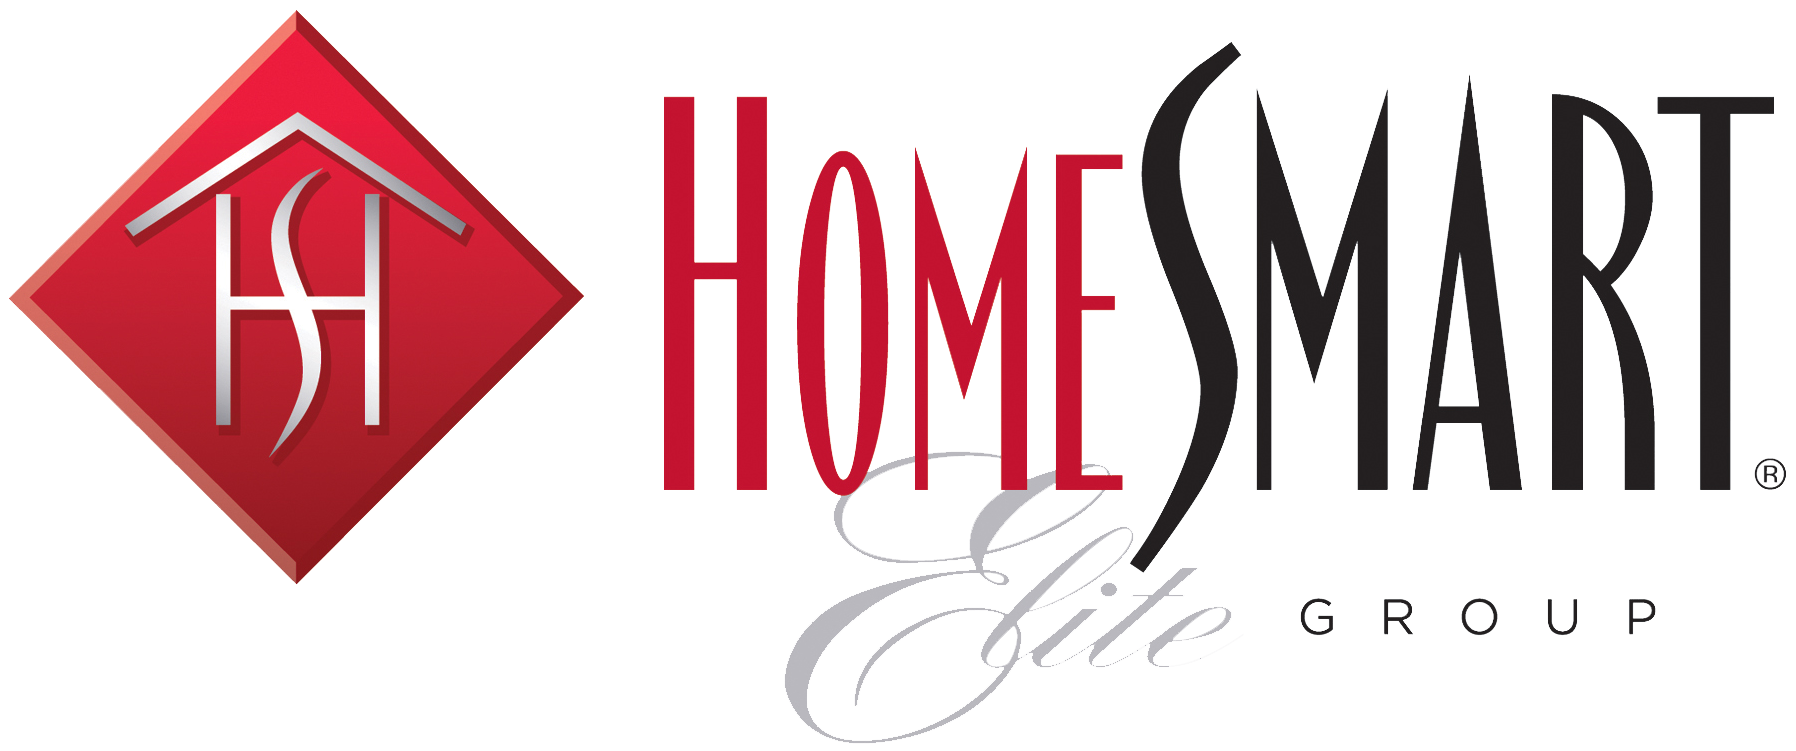 Home Smart logo